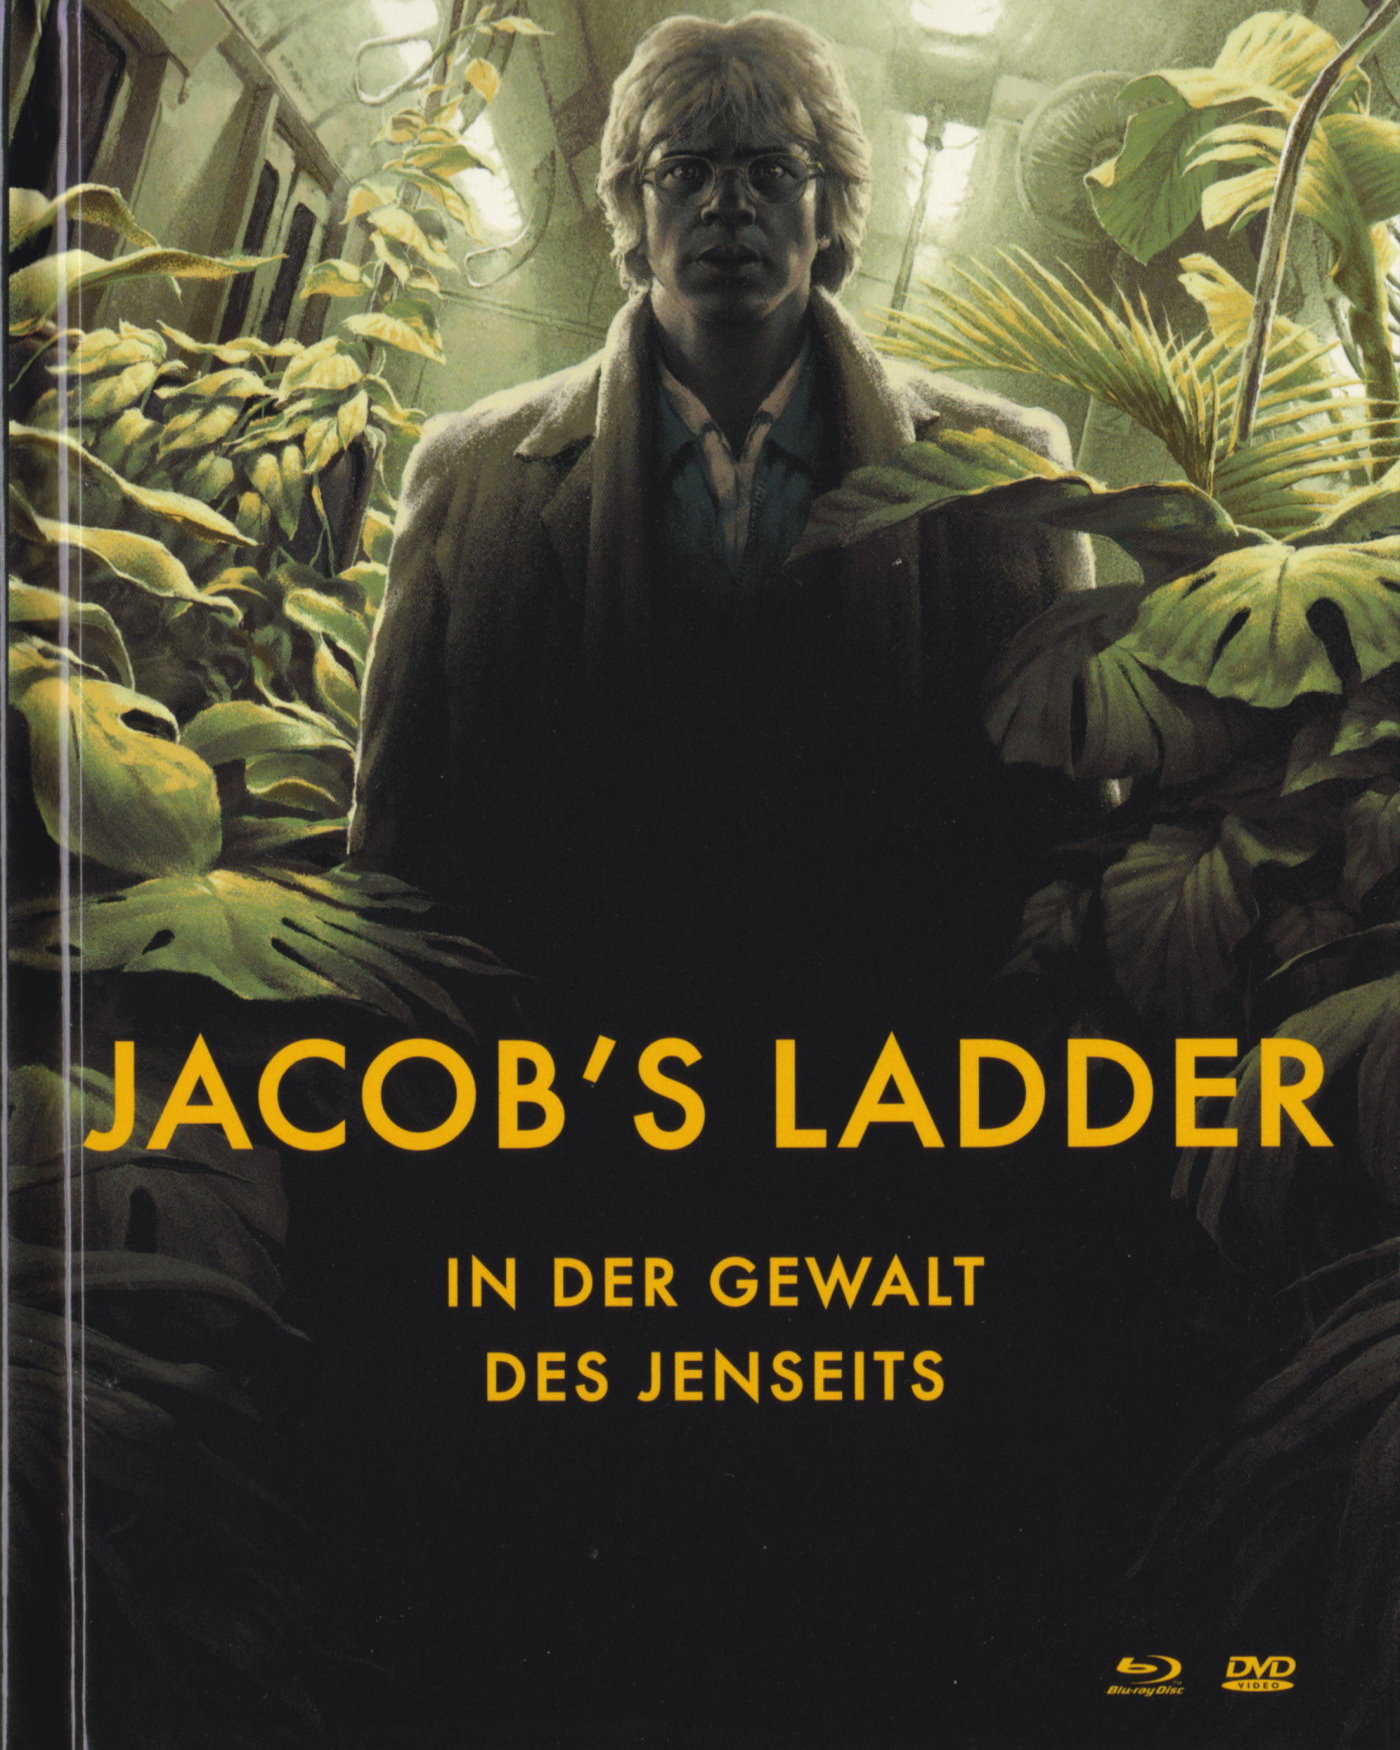 Cover - Jacob's Ladder - In der Gewalt des Jenseits.jpg